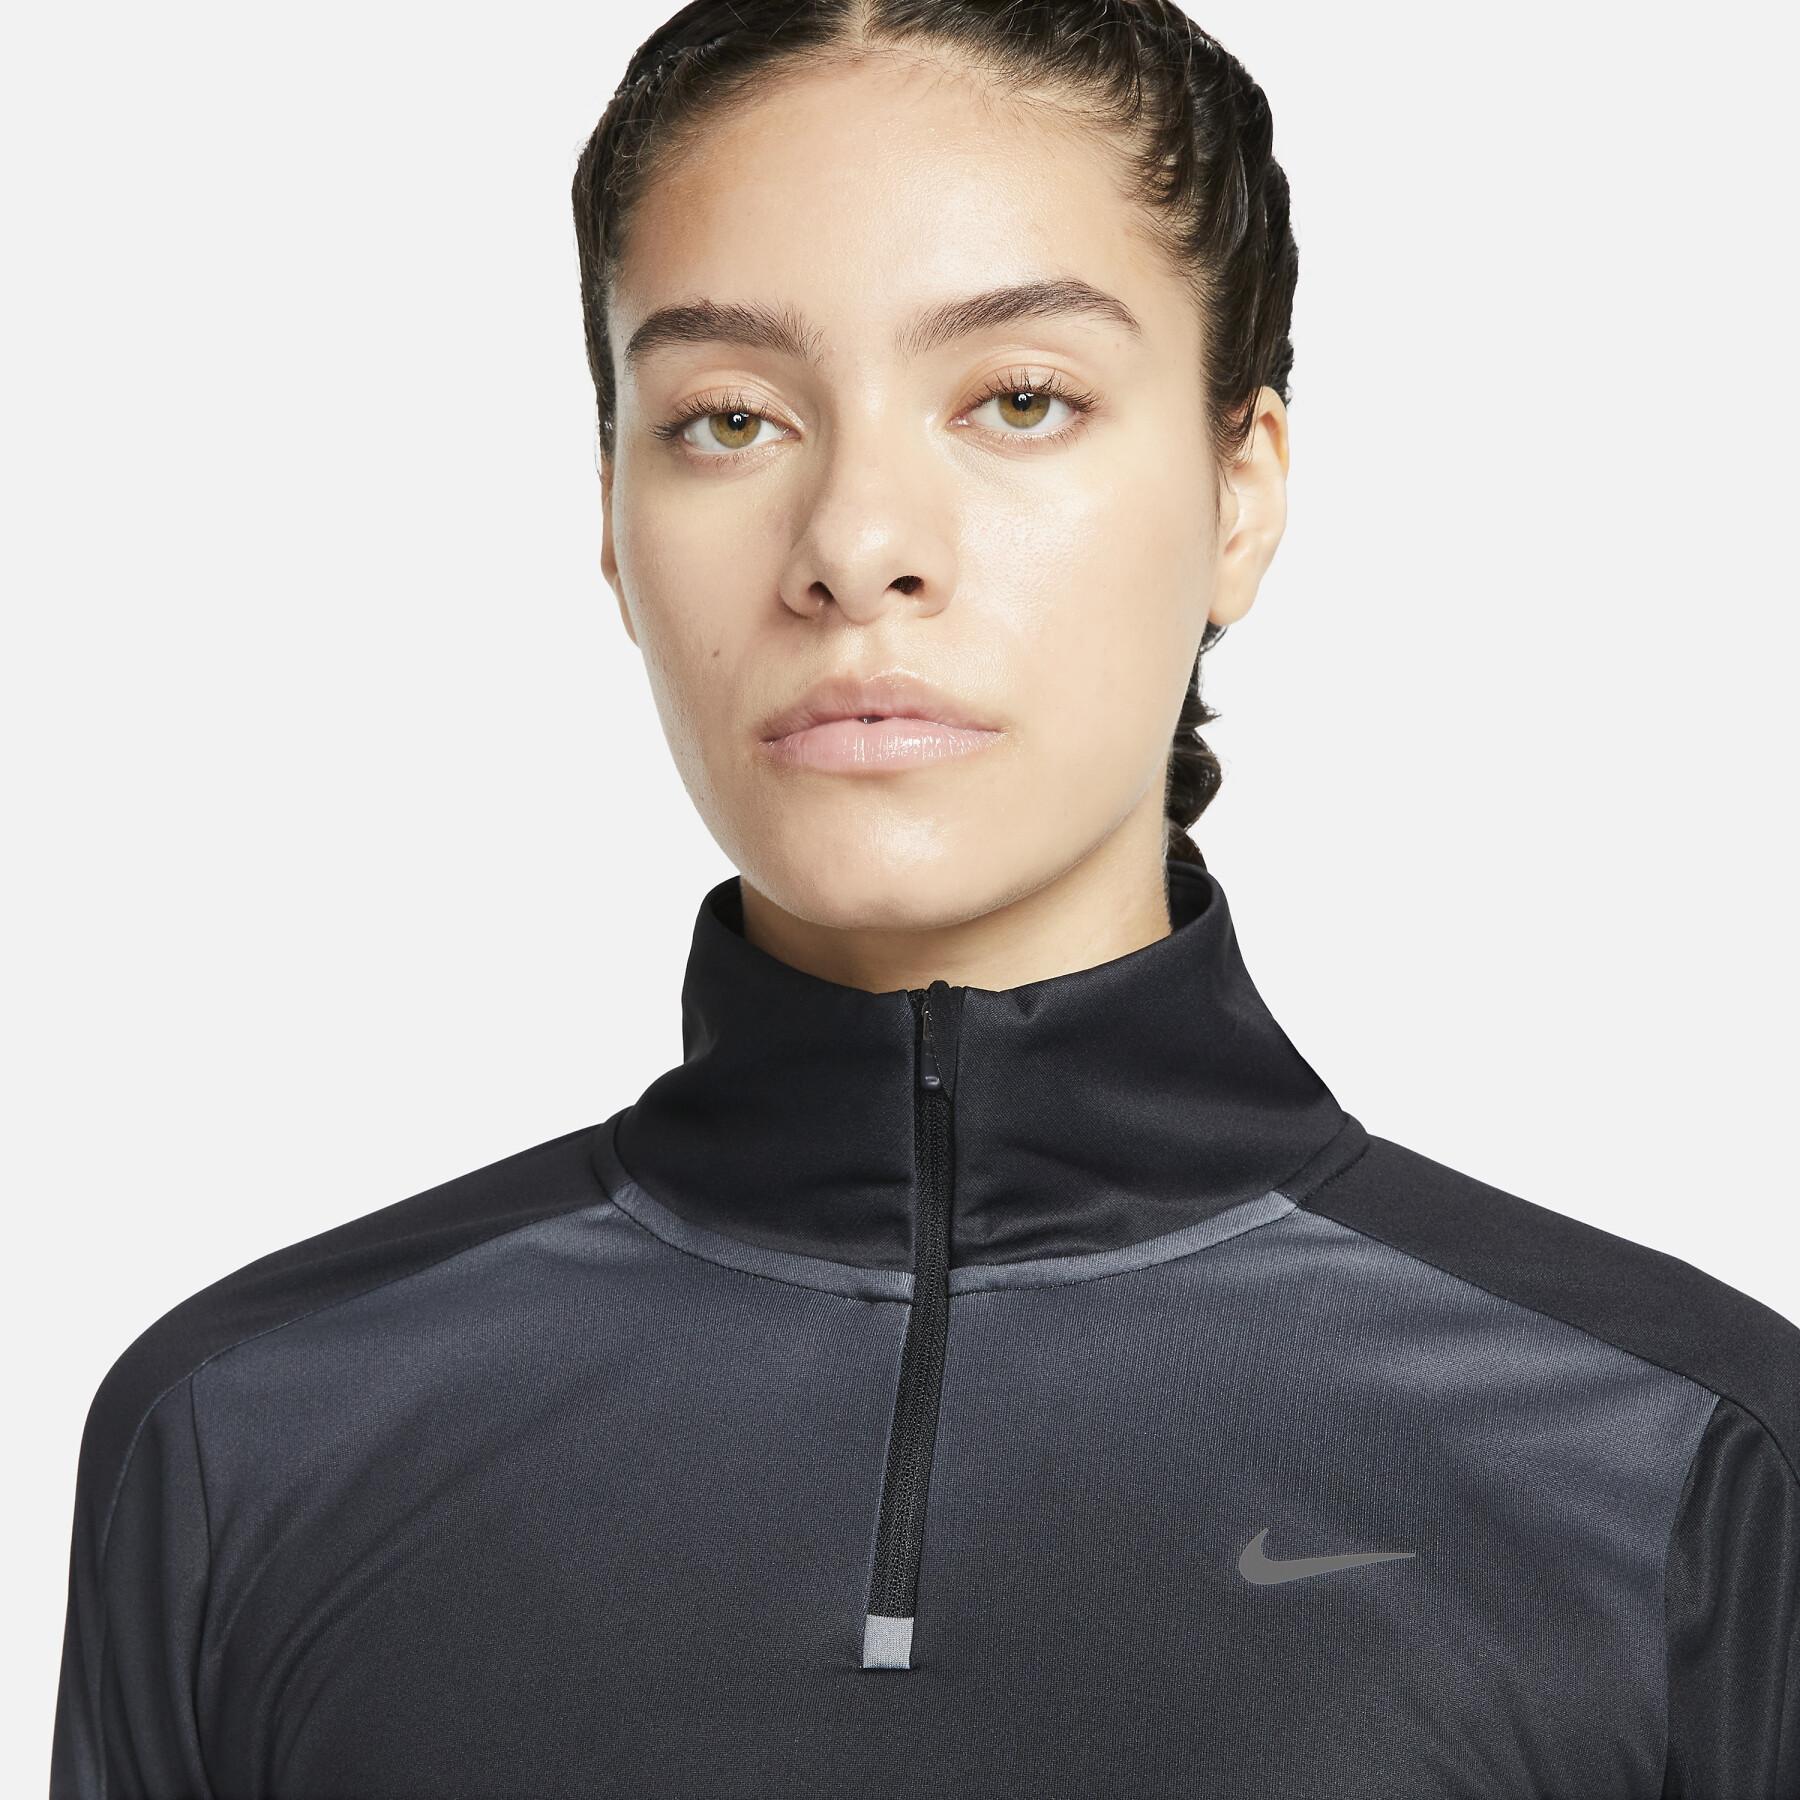 Sweatshirt demi-zip femme Nike Dri-FIT Swoosh Print